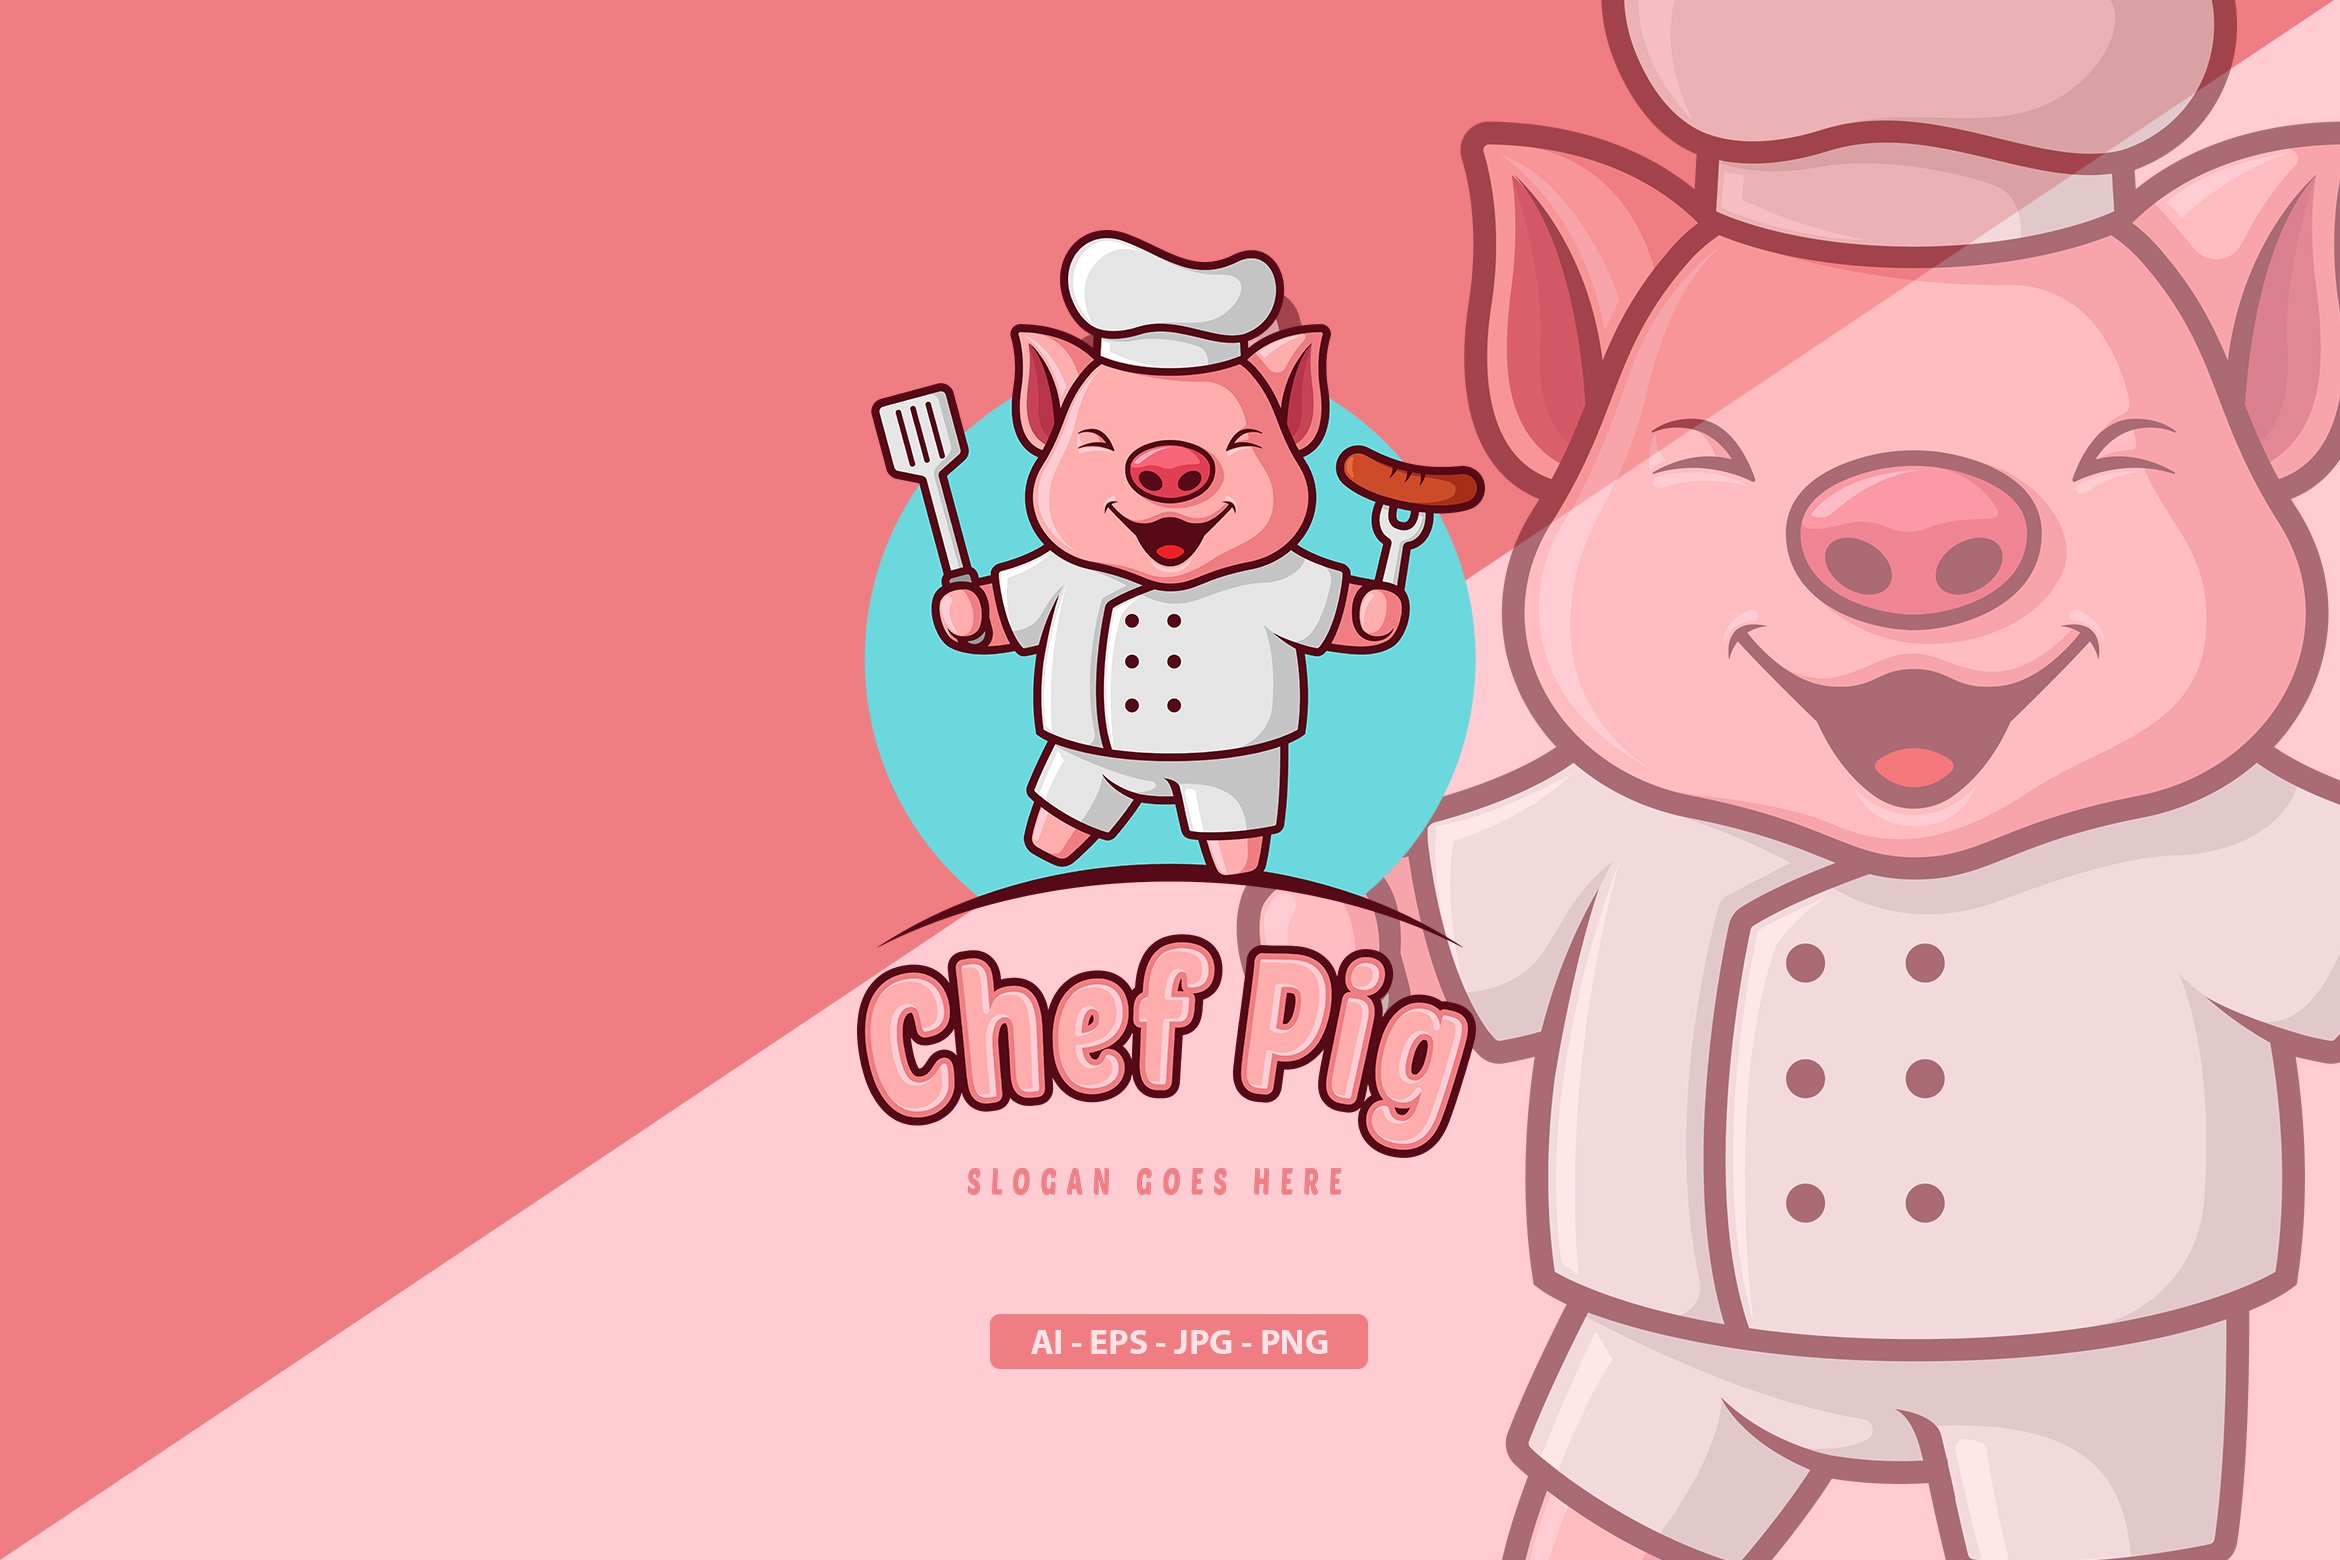 Pig - Mascot Logo cover image.